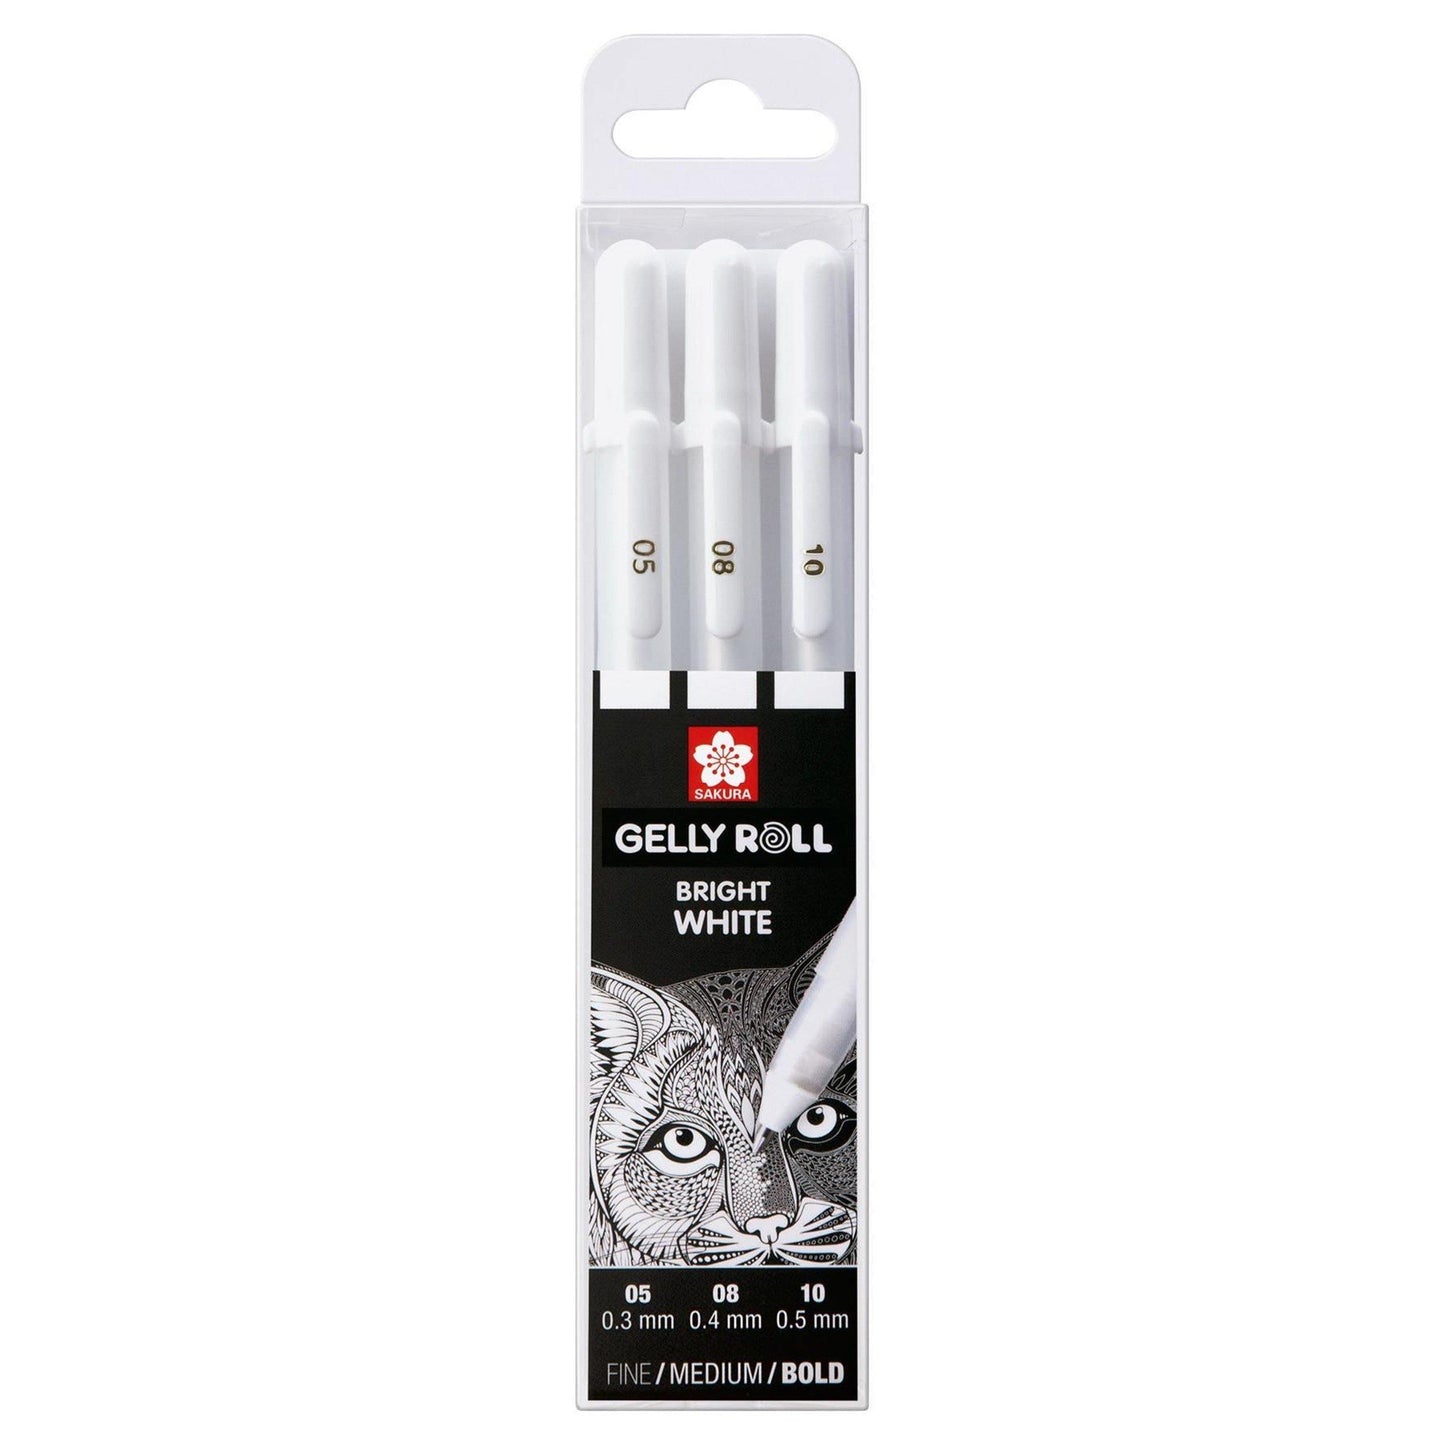 Sakura Gelly Roll Gel Pens - Bright White, 3 Pack - Dotgrid